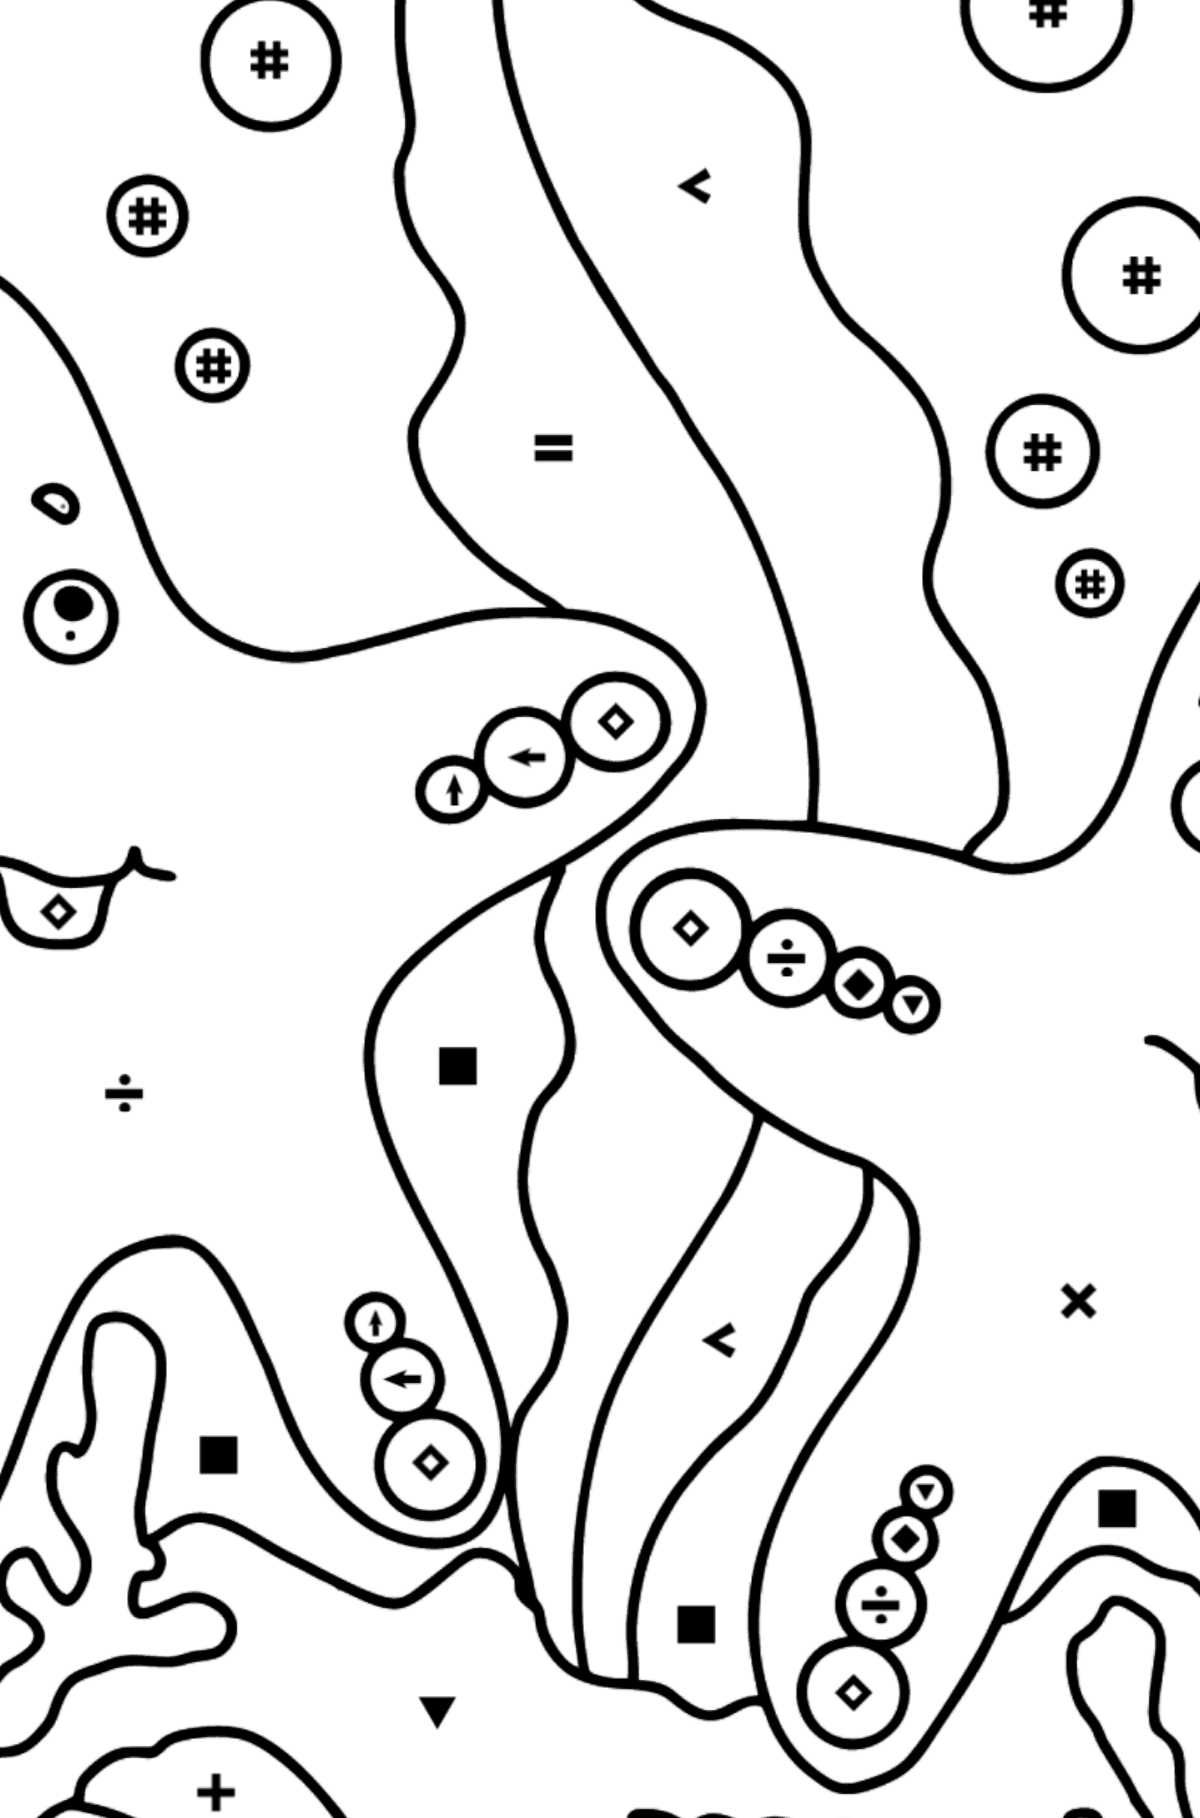 Dibujo para colorear Dos estrellas de mar (difícil) - Colorear por Símbolos para Niños